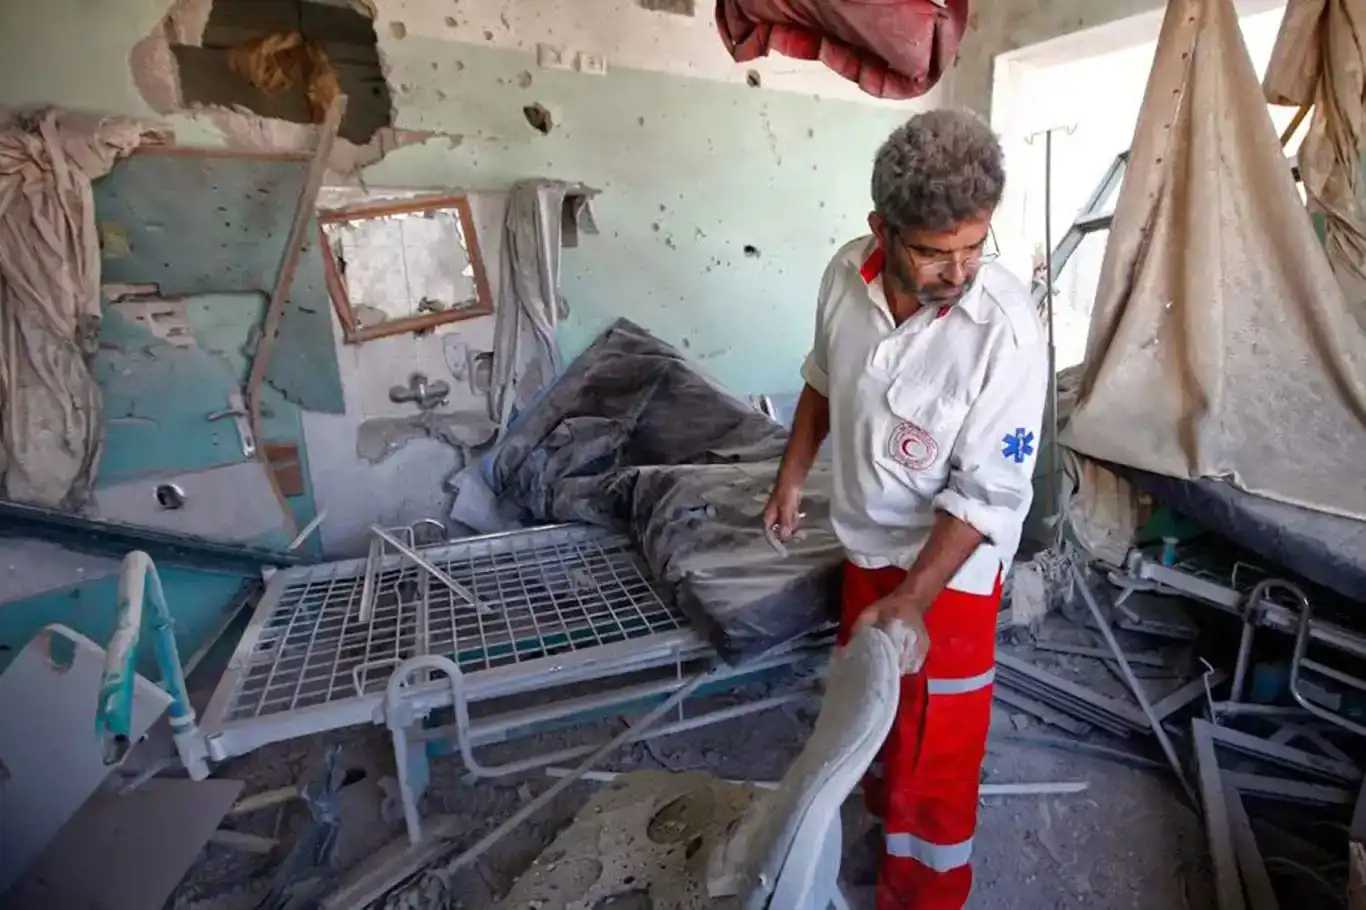 Oxfam: Hastaneleri hedef almanın hiçbir haklı nedeni yok